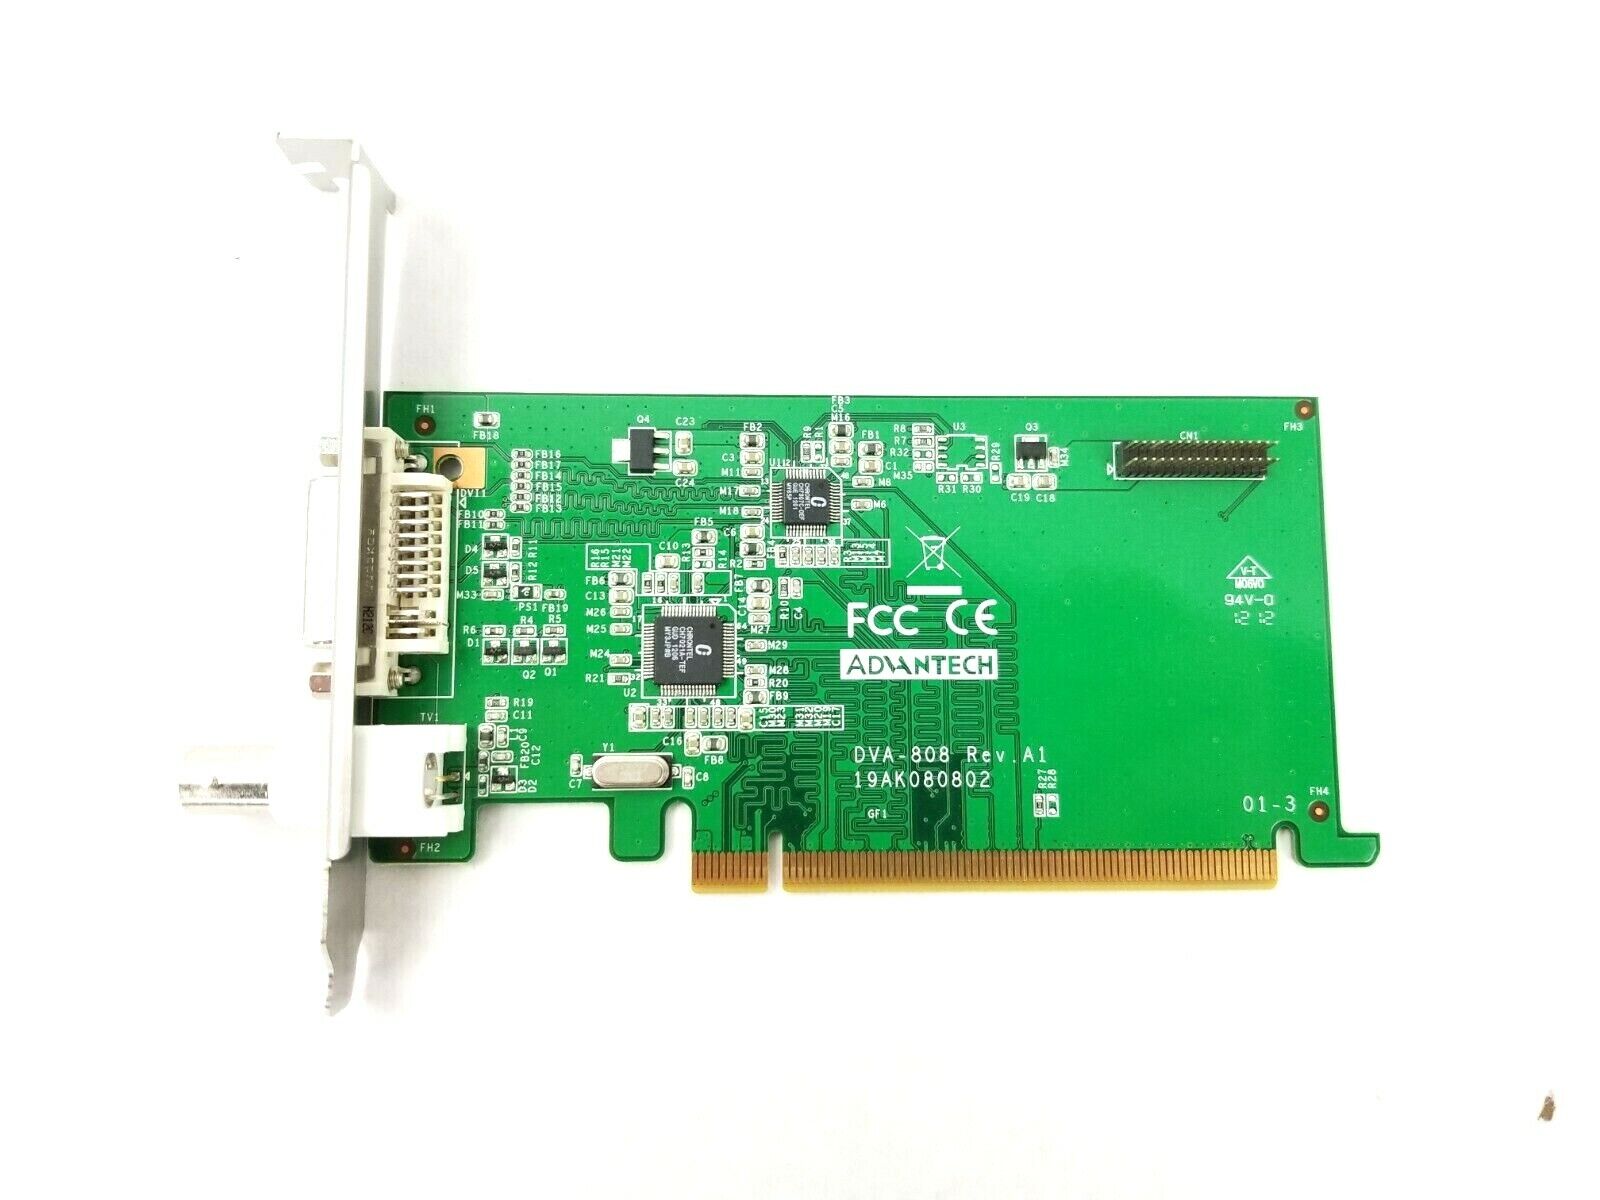 Advantech DVA-808 Rev. A1 PCIe DVR Video Card